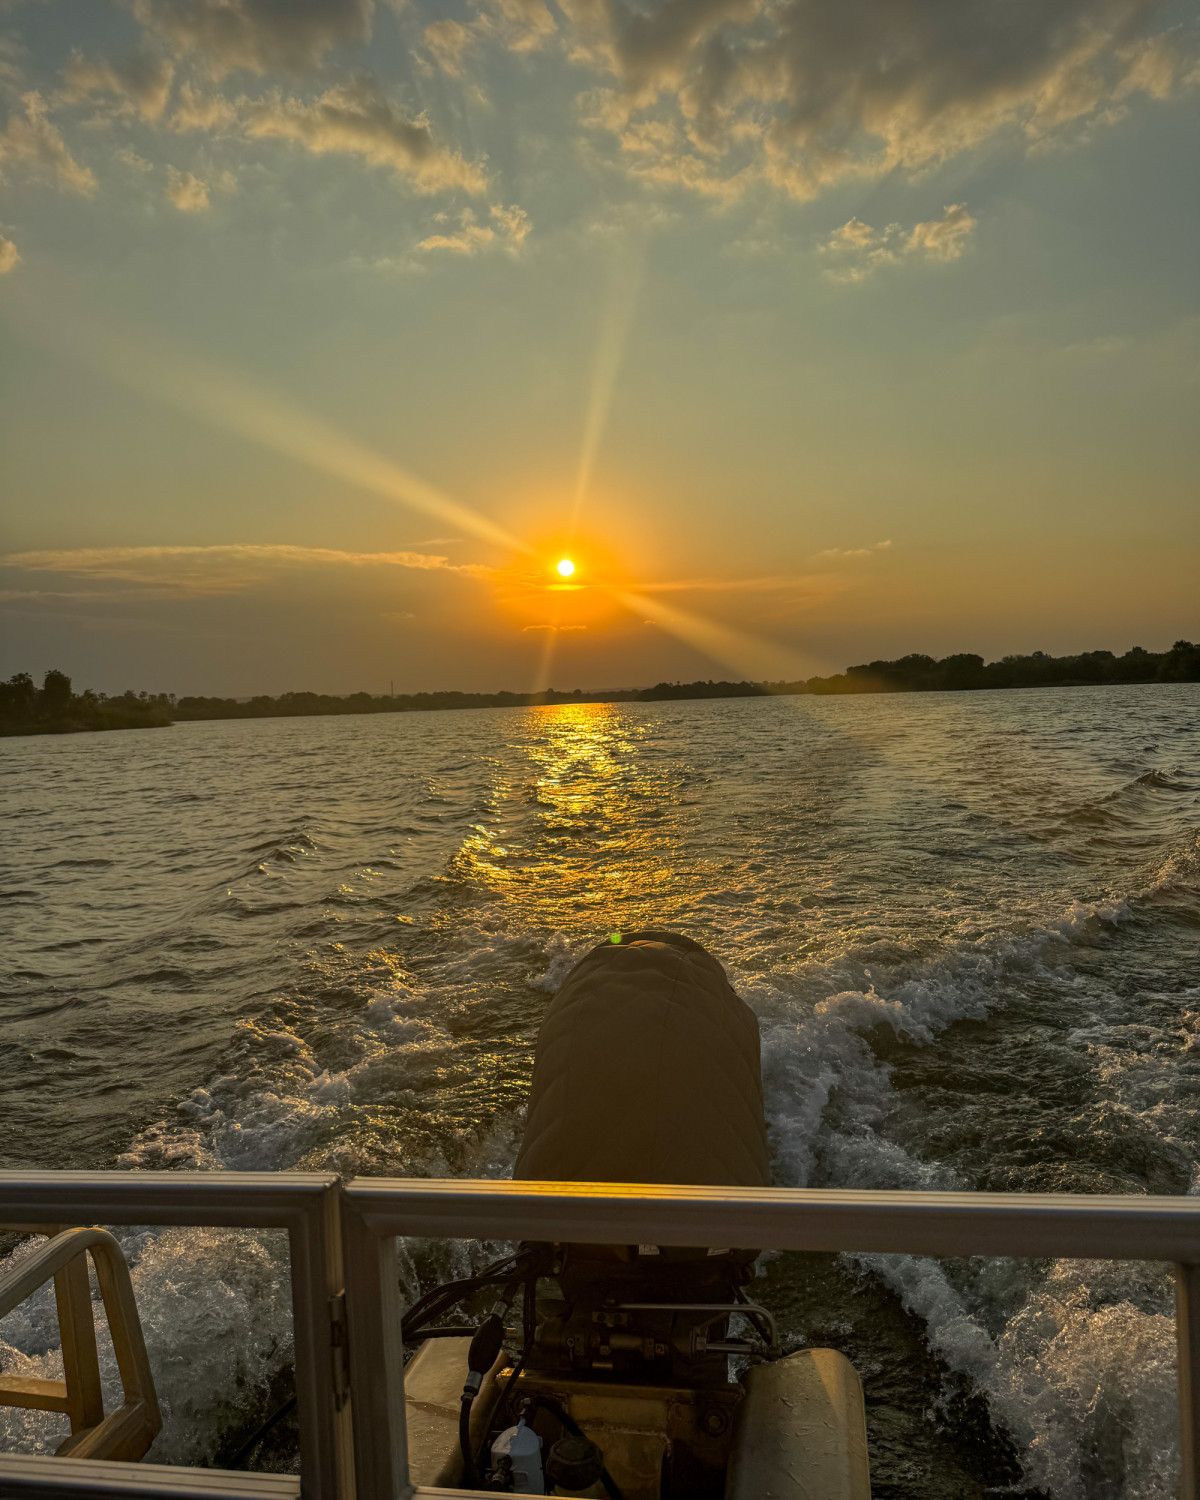 Zambezi Sunset Cruise